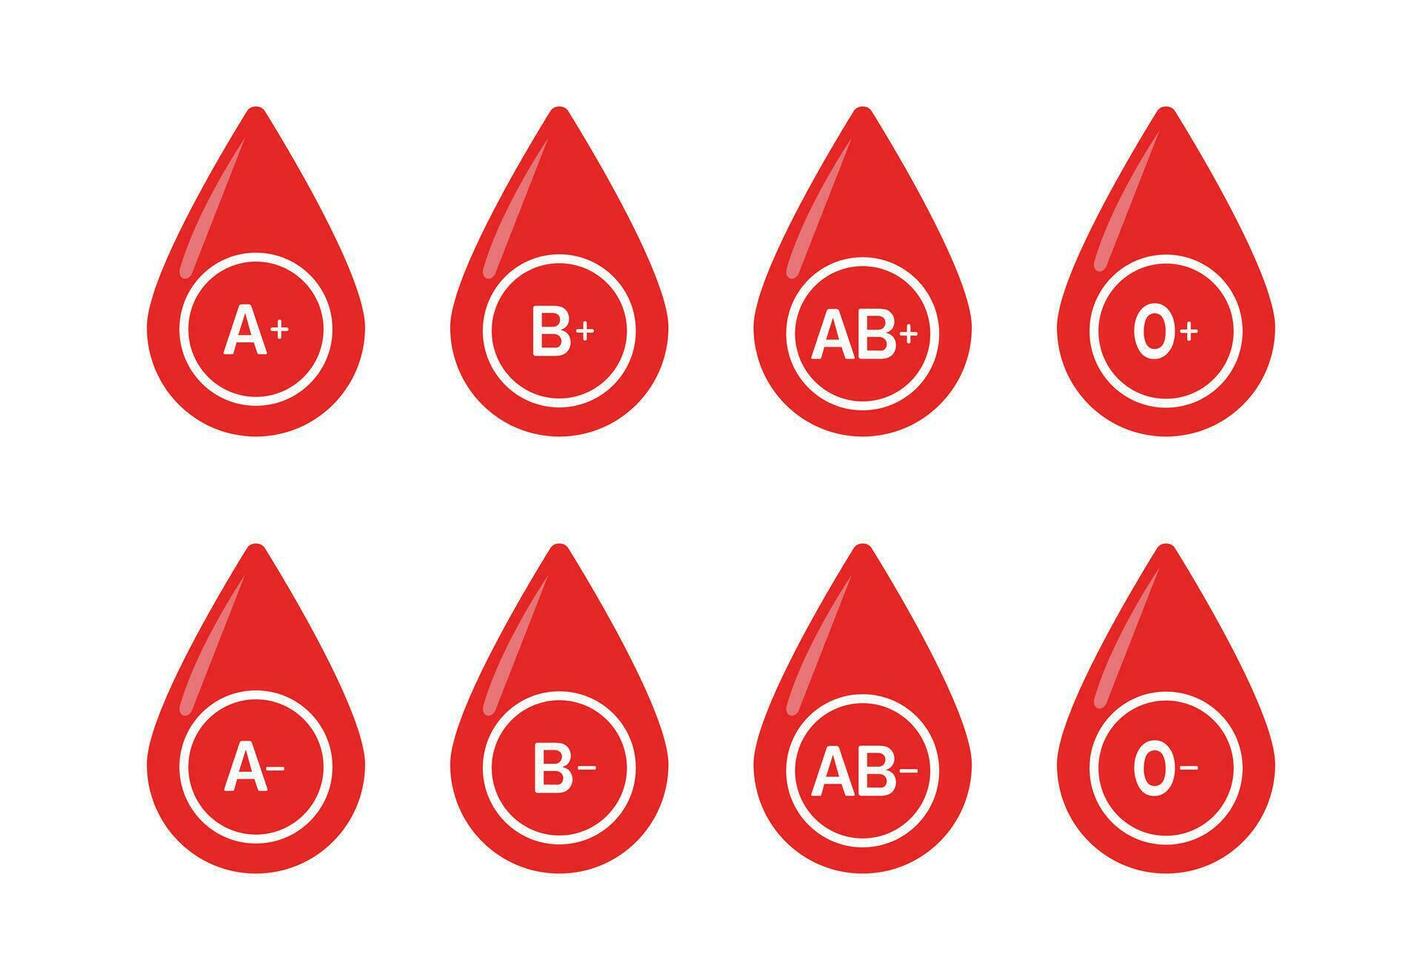 sangue grupo vetor ícones isolado em branco. grupo do sangue pictograma. o, a, b, ab positivo e negativo tipo do sangue pictograma definir. sangrar doação conceito.vetor ilustração.